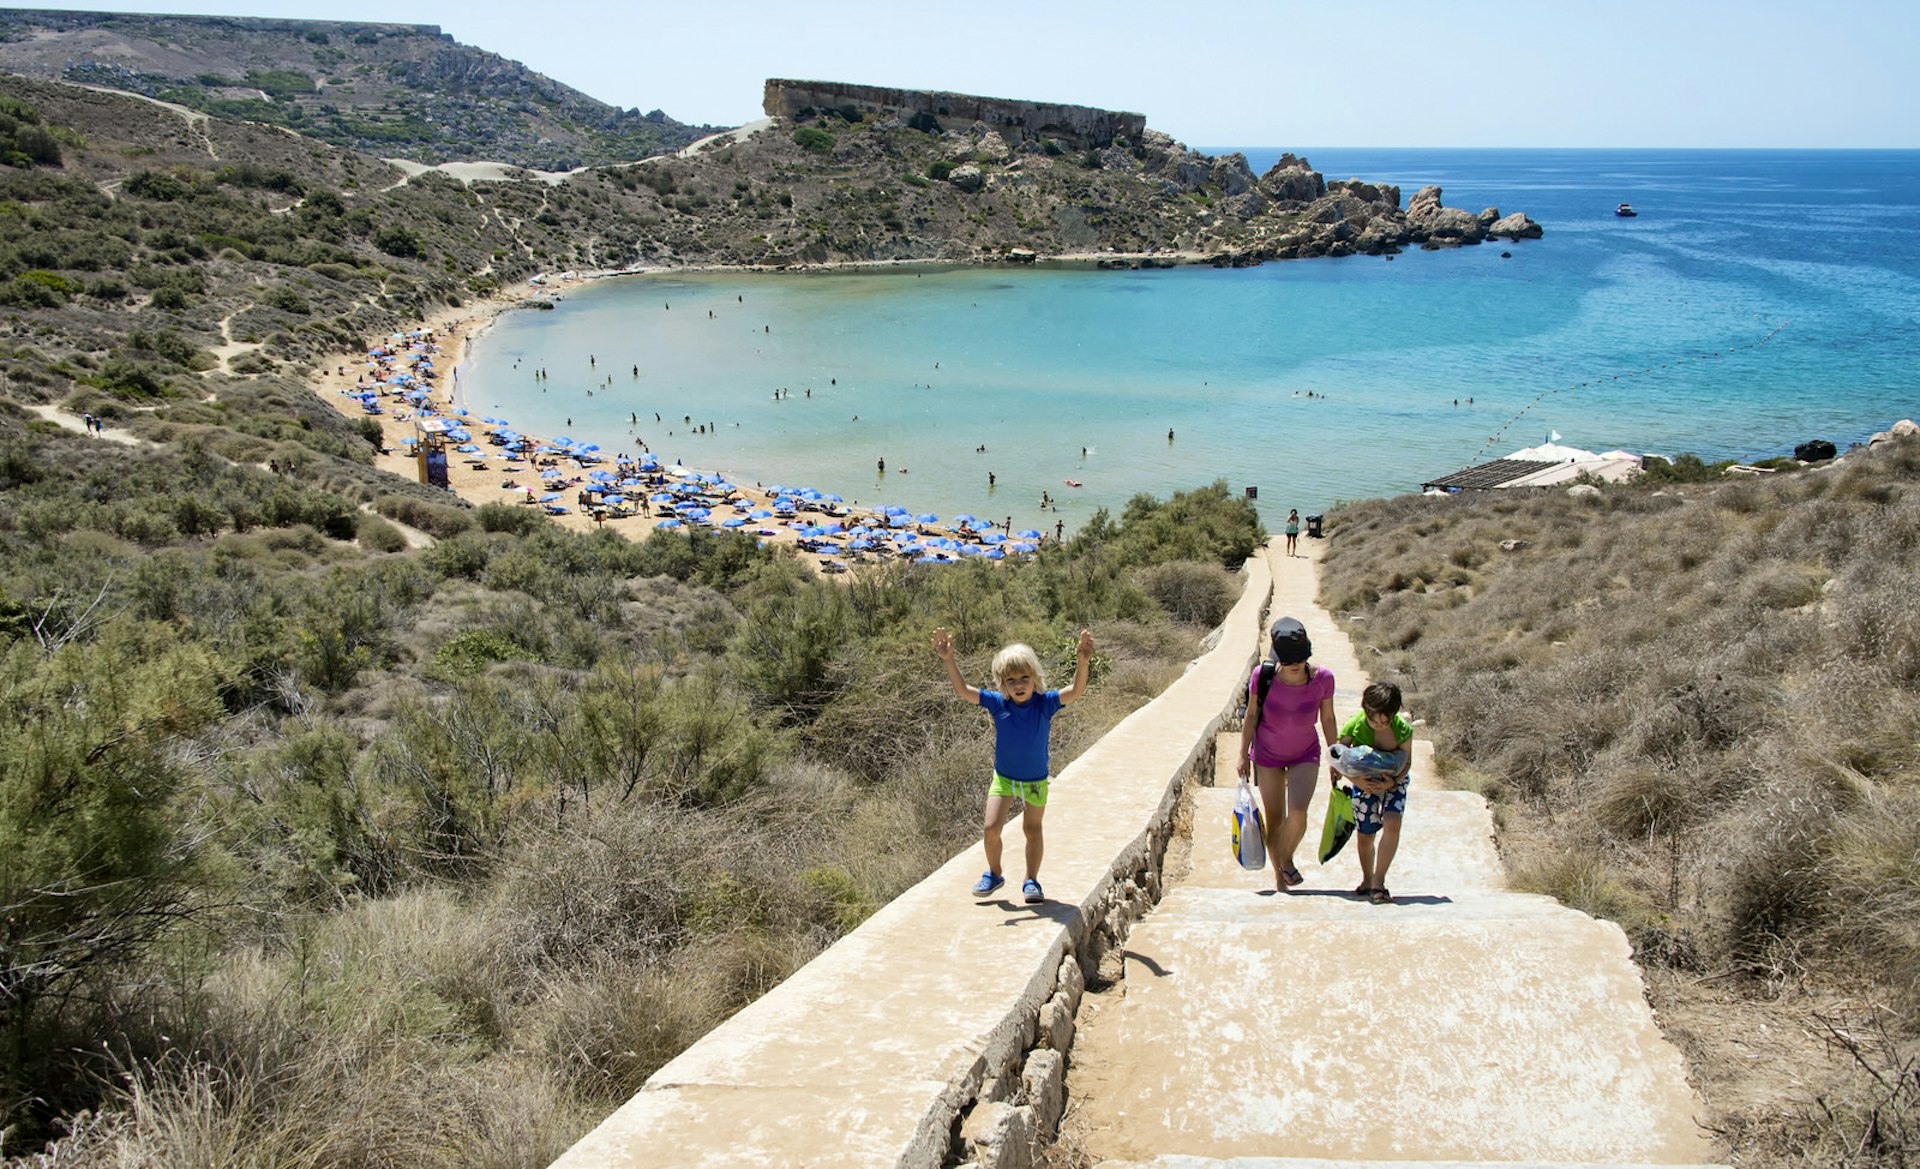 Picturesque Għajn Tuffieħa Bay is well worth the 100-plus steps